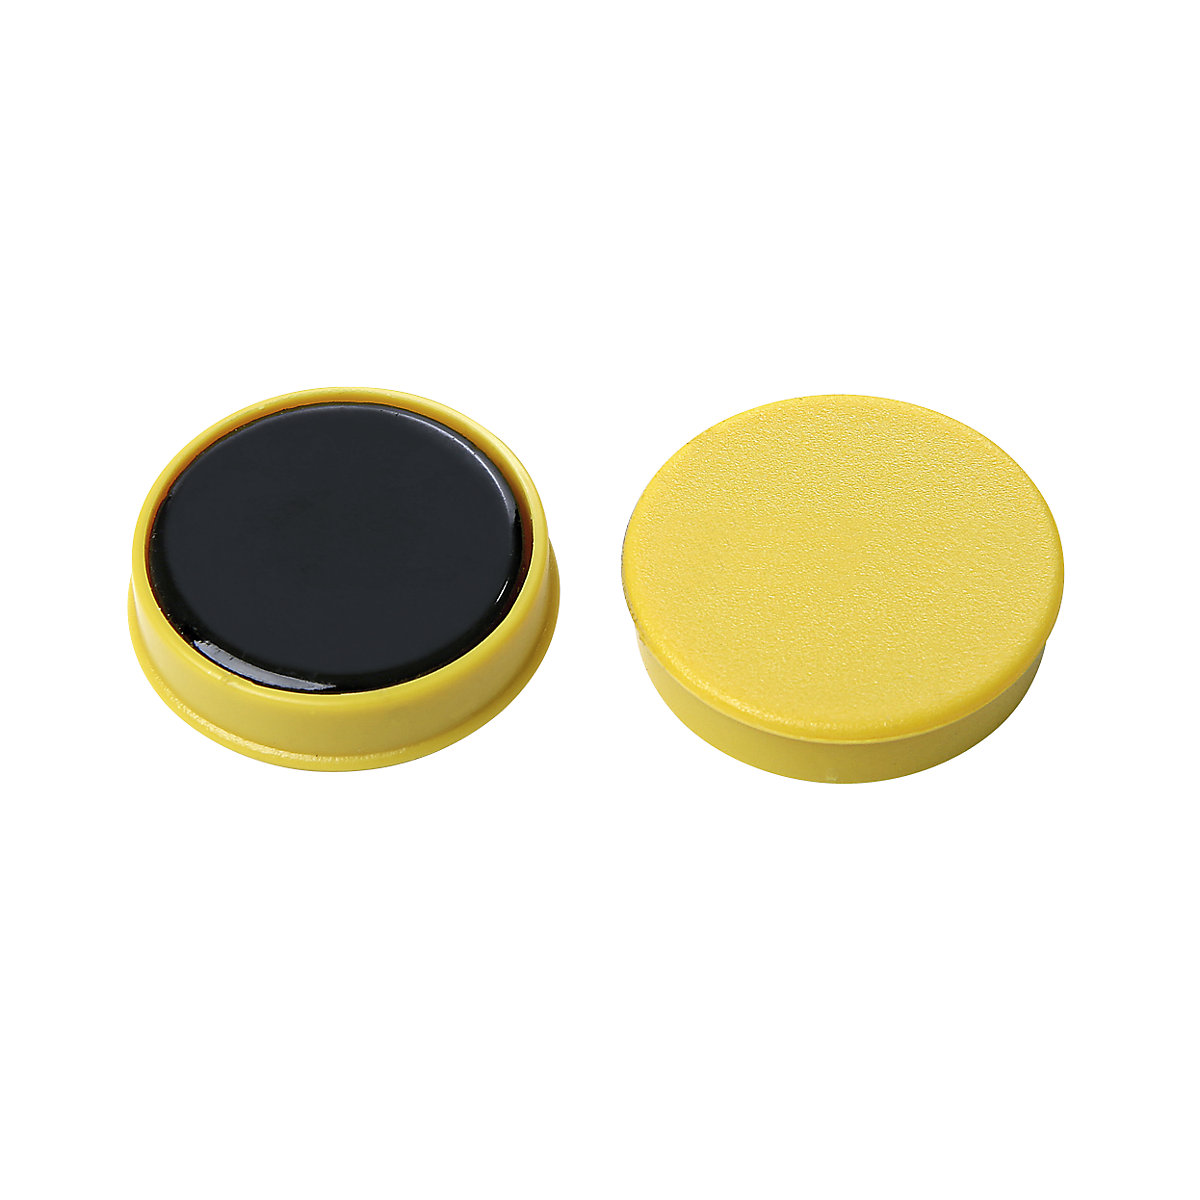 Okrugli magnet, plastika – eurokraft basic, slaganje po bojama, u plavoj, žutoj, crvenoj boji, Ø 20 mm, pak. 72 kom.-2